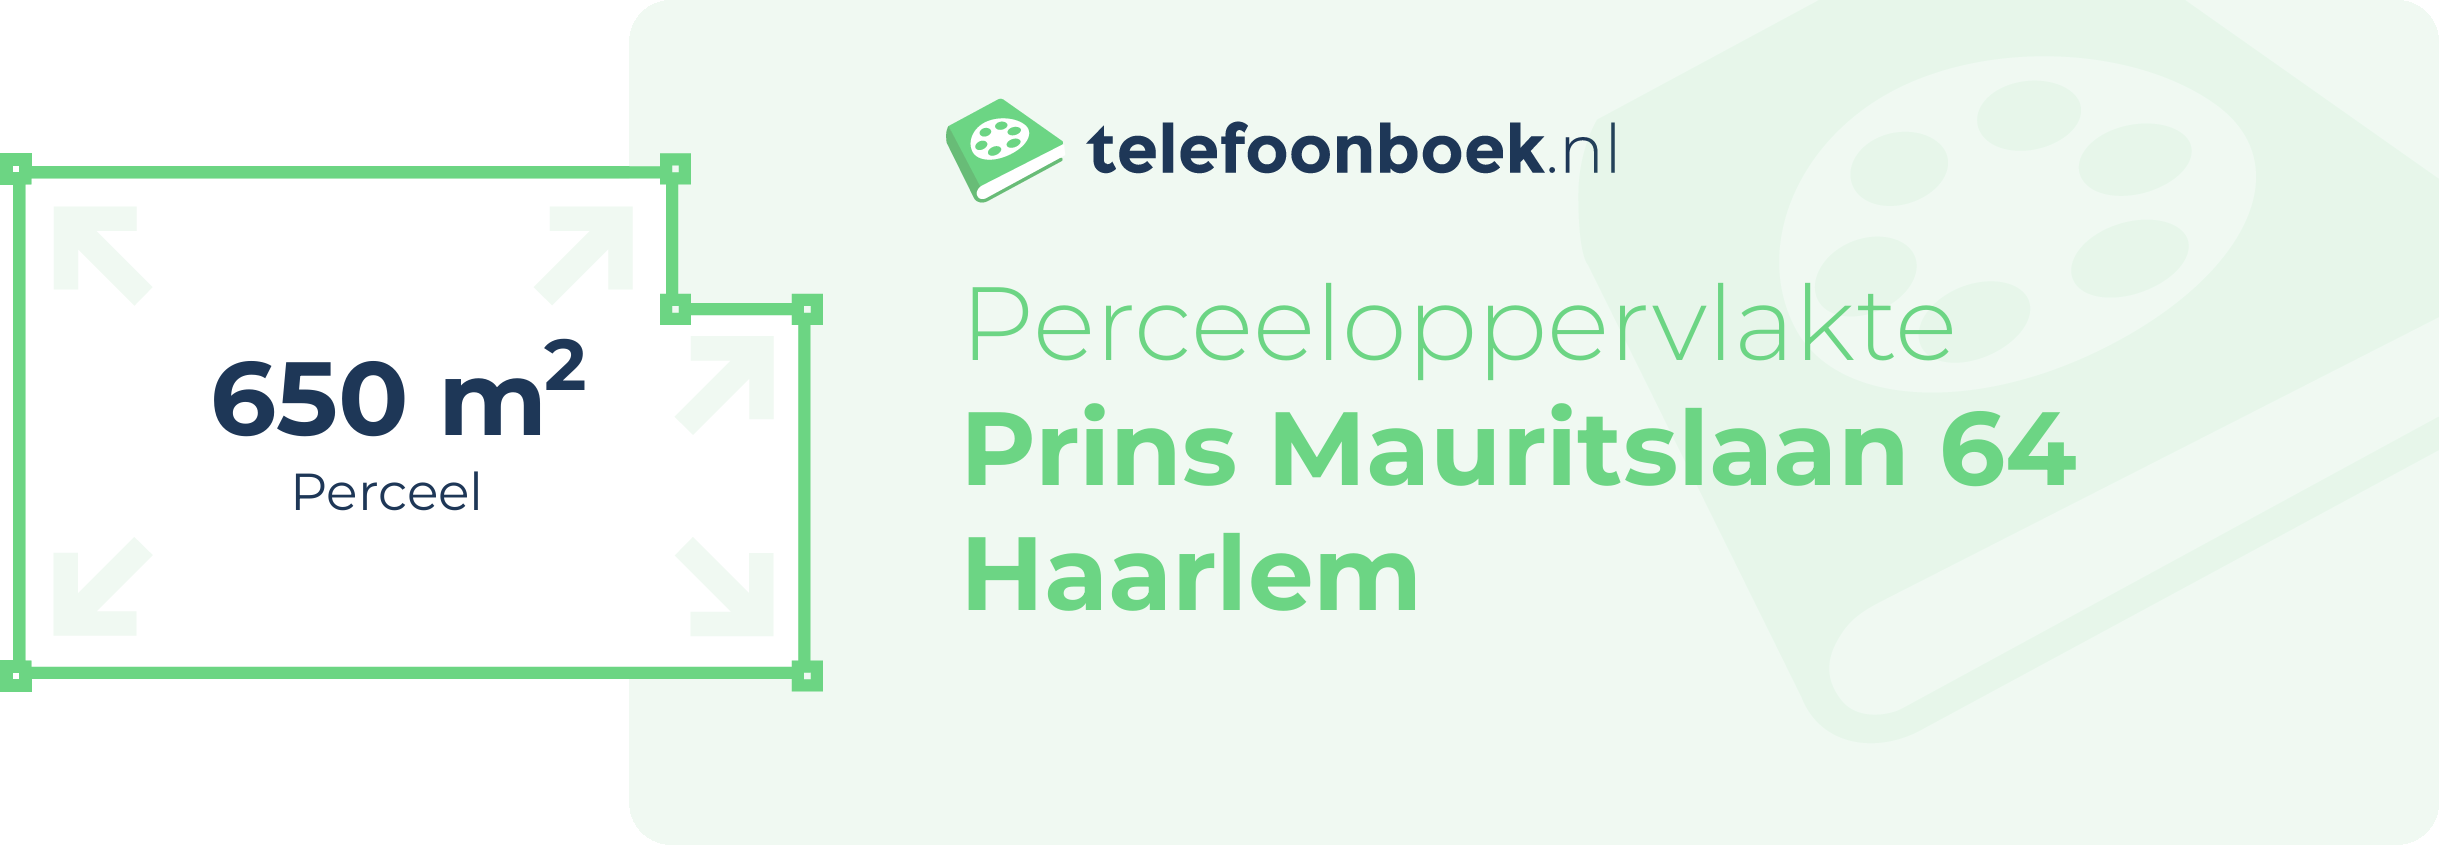 Perceeloppervlakte Prins Mauritslaan 64 Haarlem